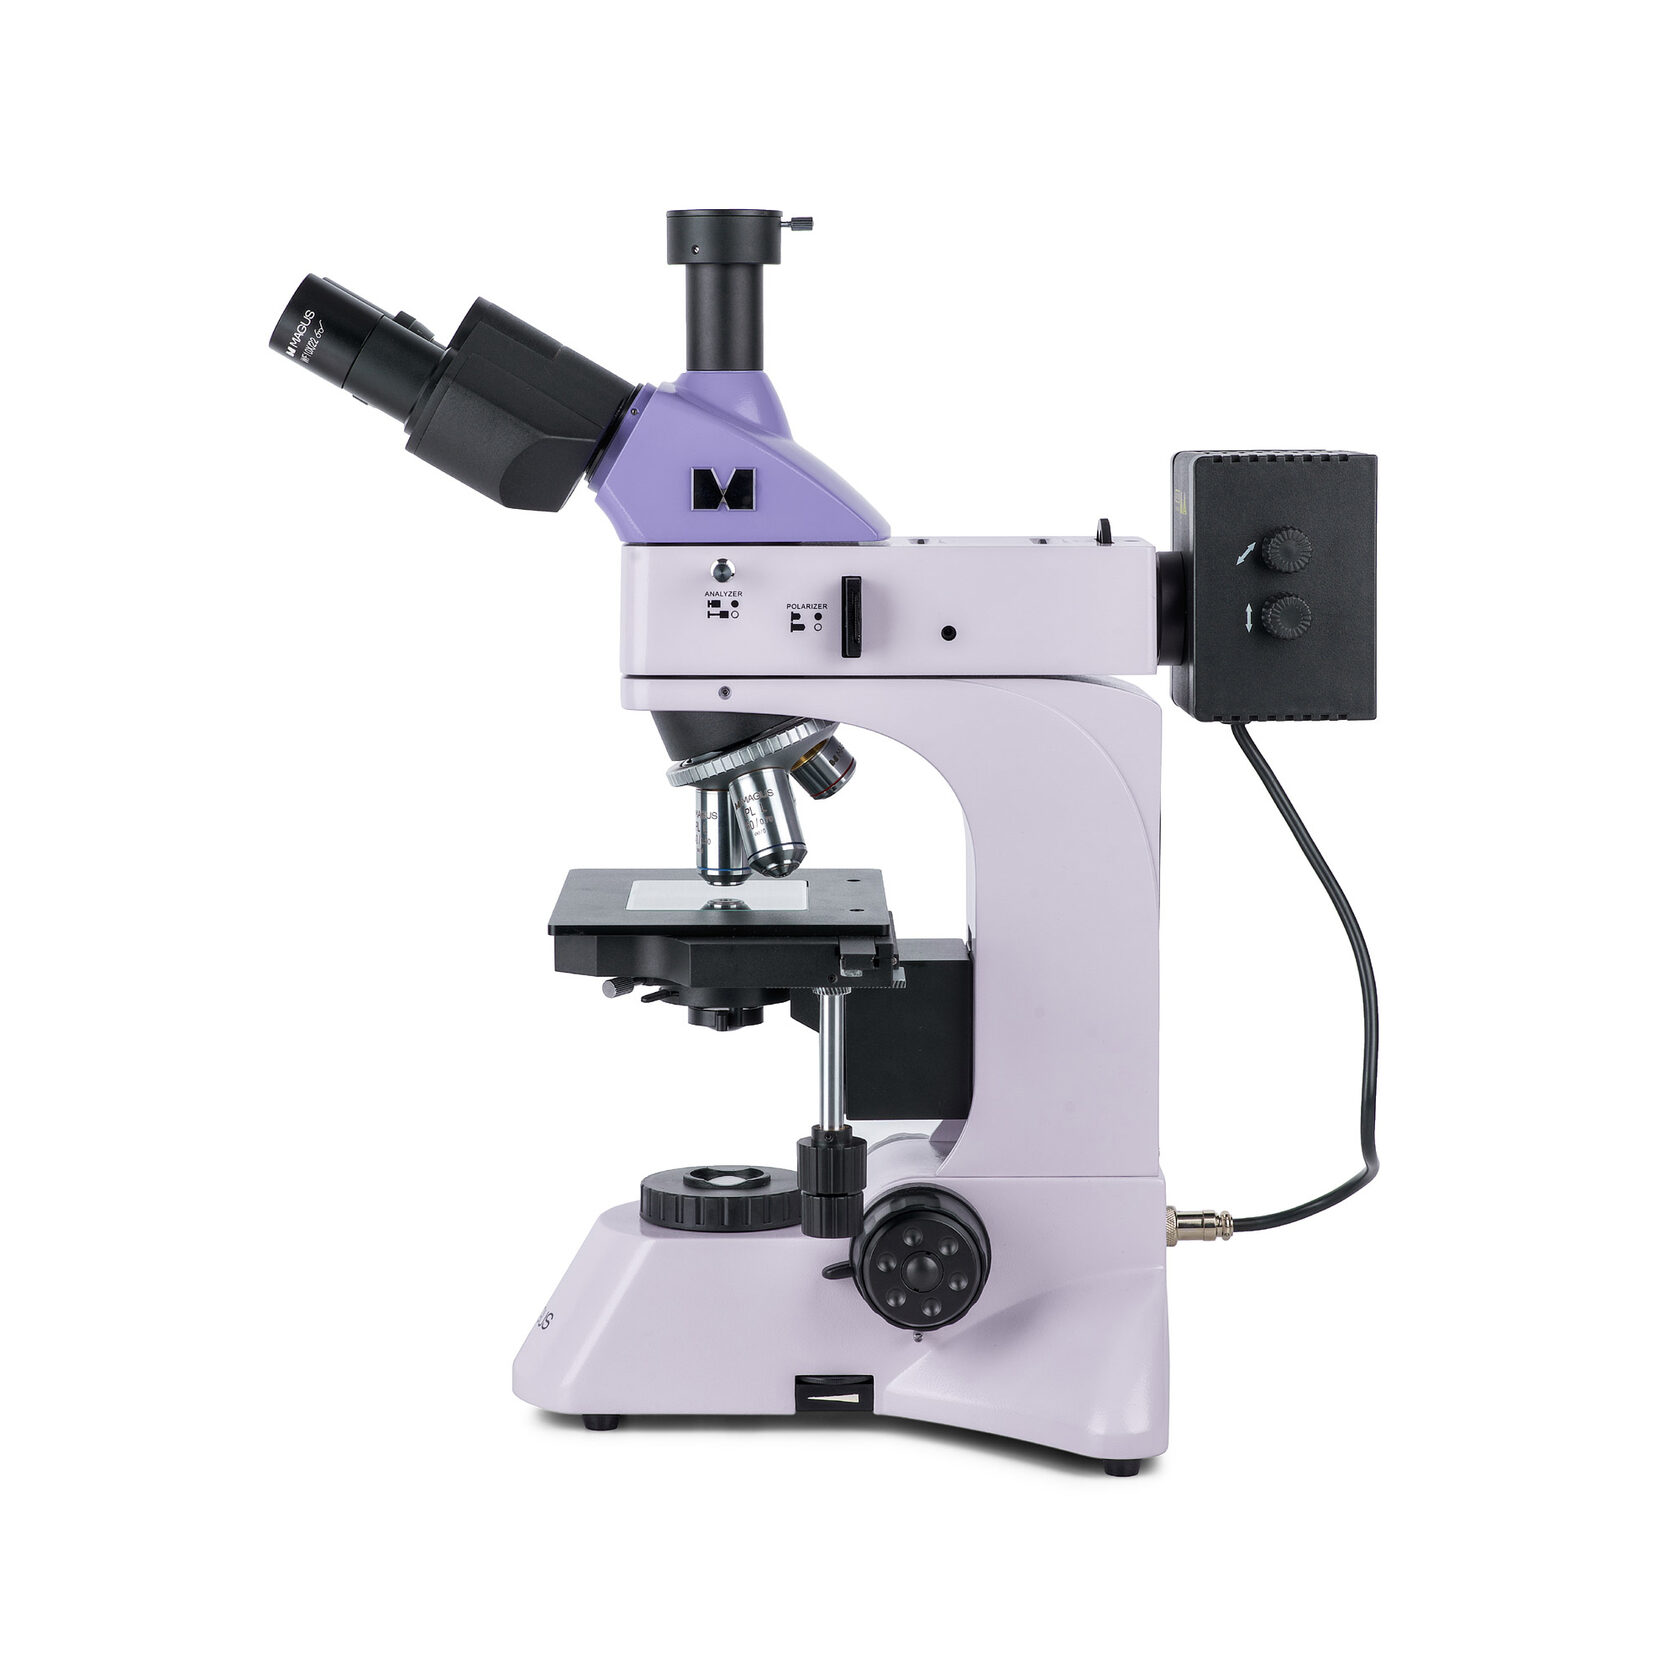 Металлографический микроскоп MAGUS Metal 600